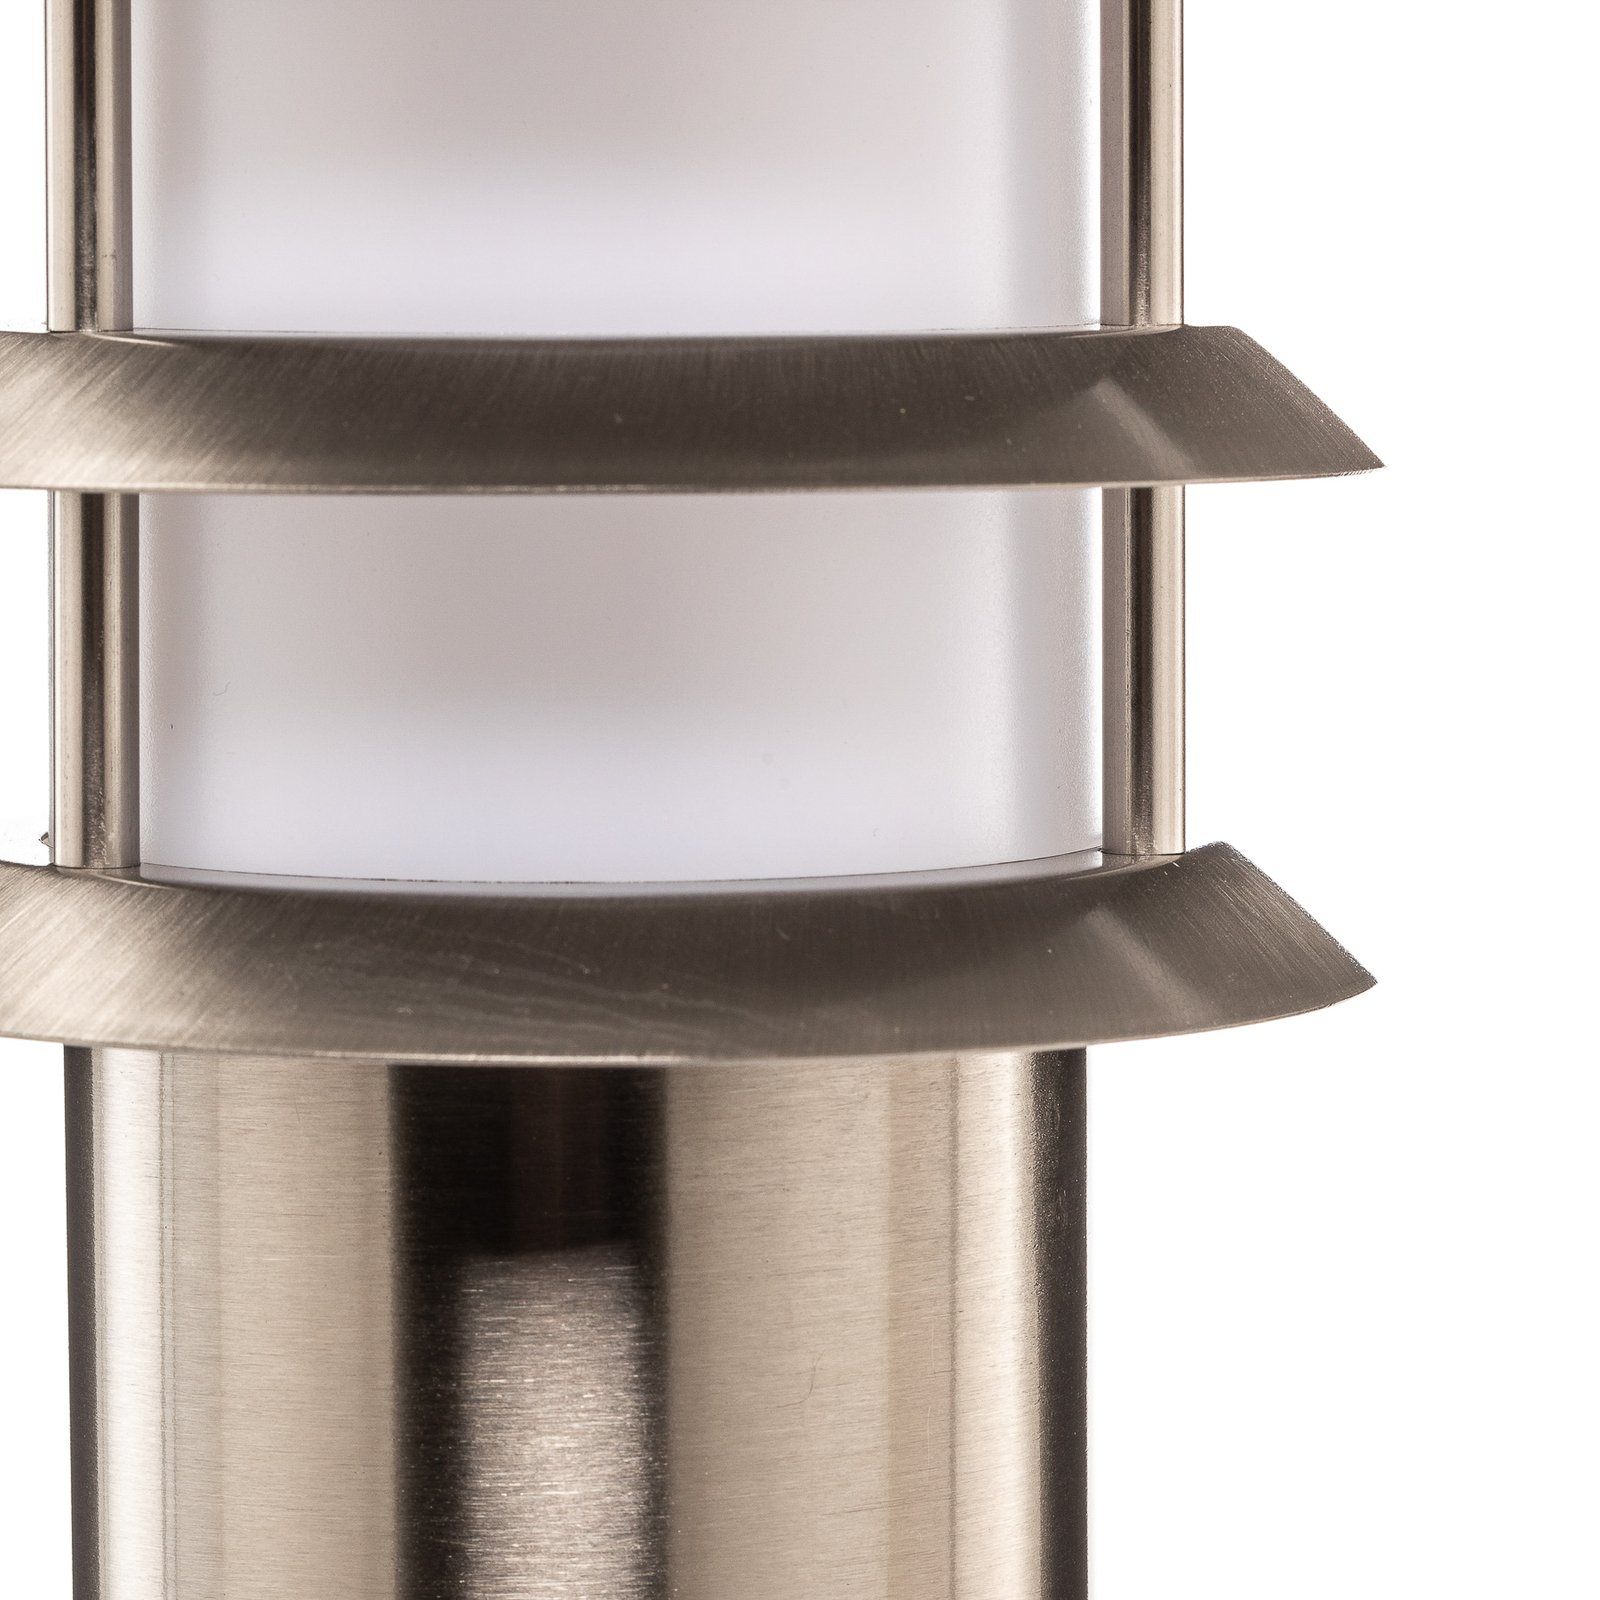 Stainless steel pillar light Selina